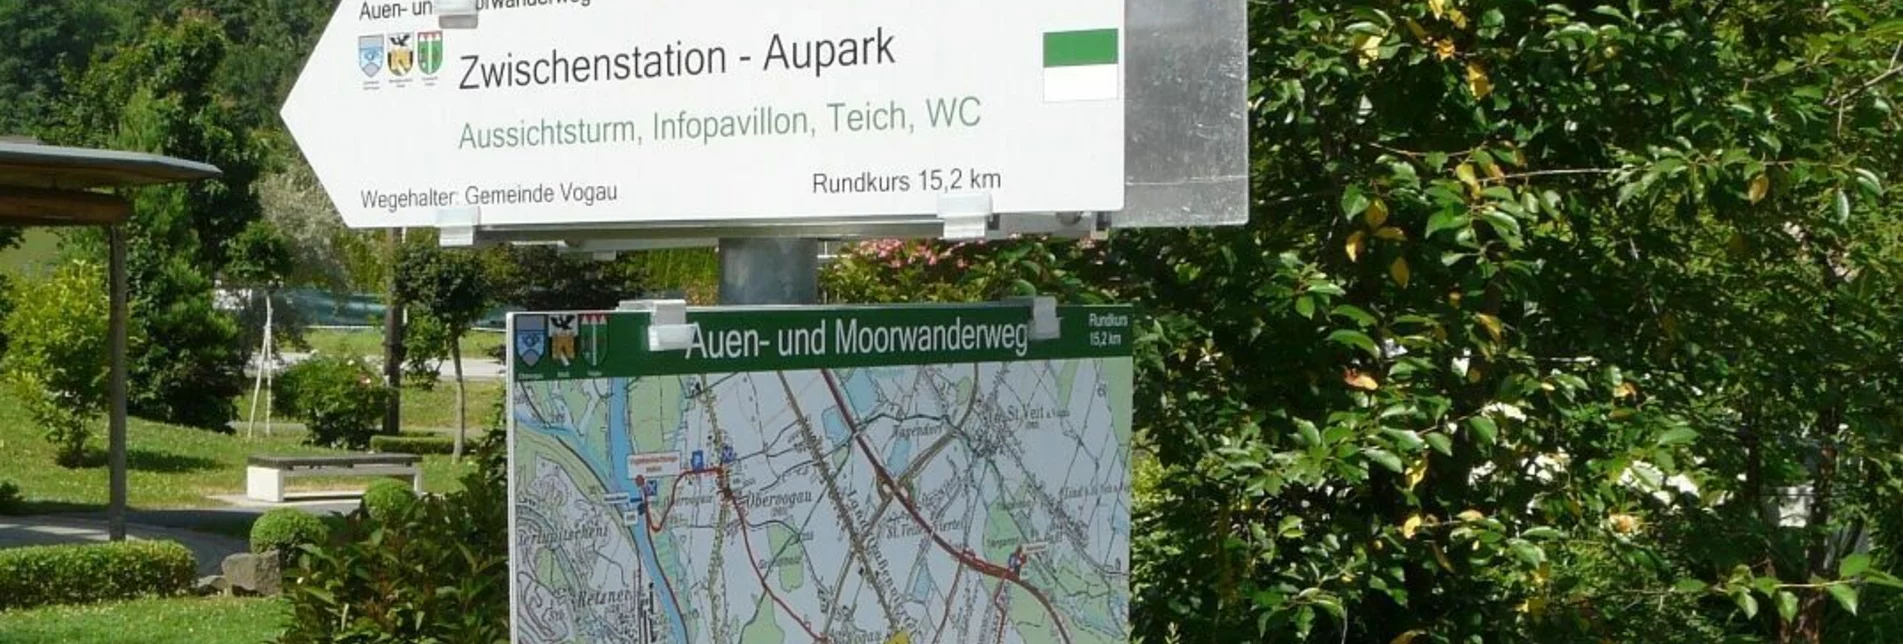 Wanderung Auen- und Moorwanderung in der Aktivregion - Touren-Impression #1 | © Südsteiermark